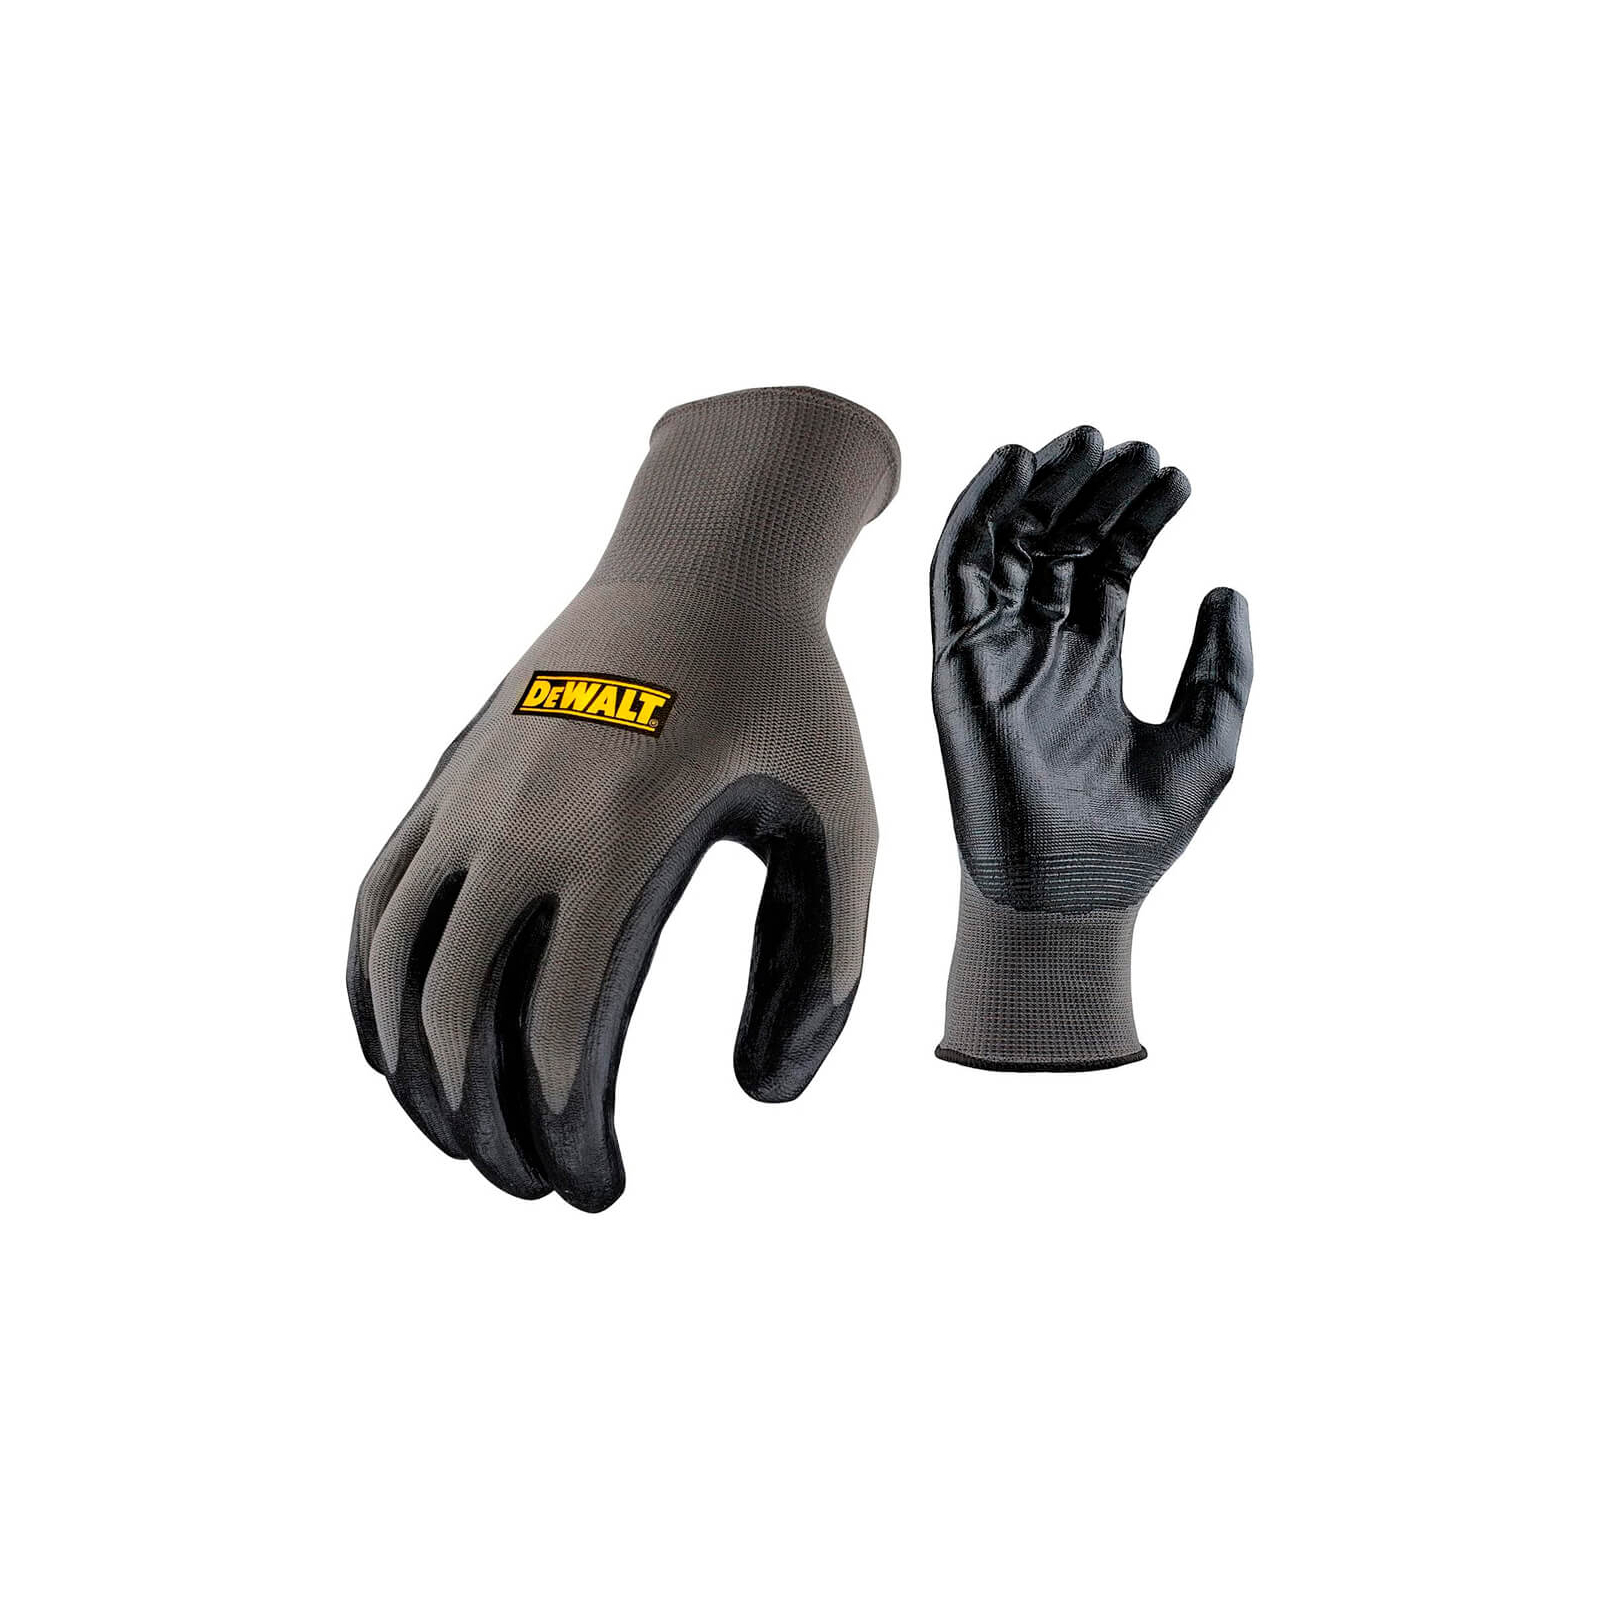 Защитные перчатки DeWALT разм. L/9, нейлоновые с покрытием нитрилом (DPG66L)